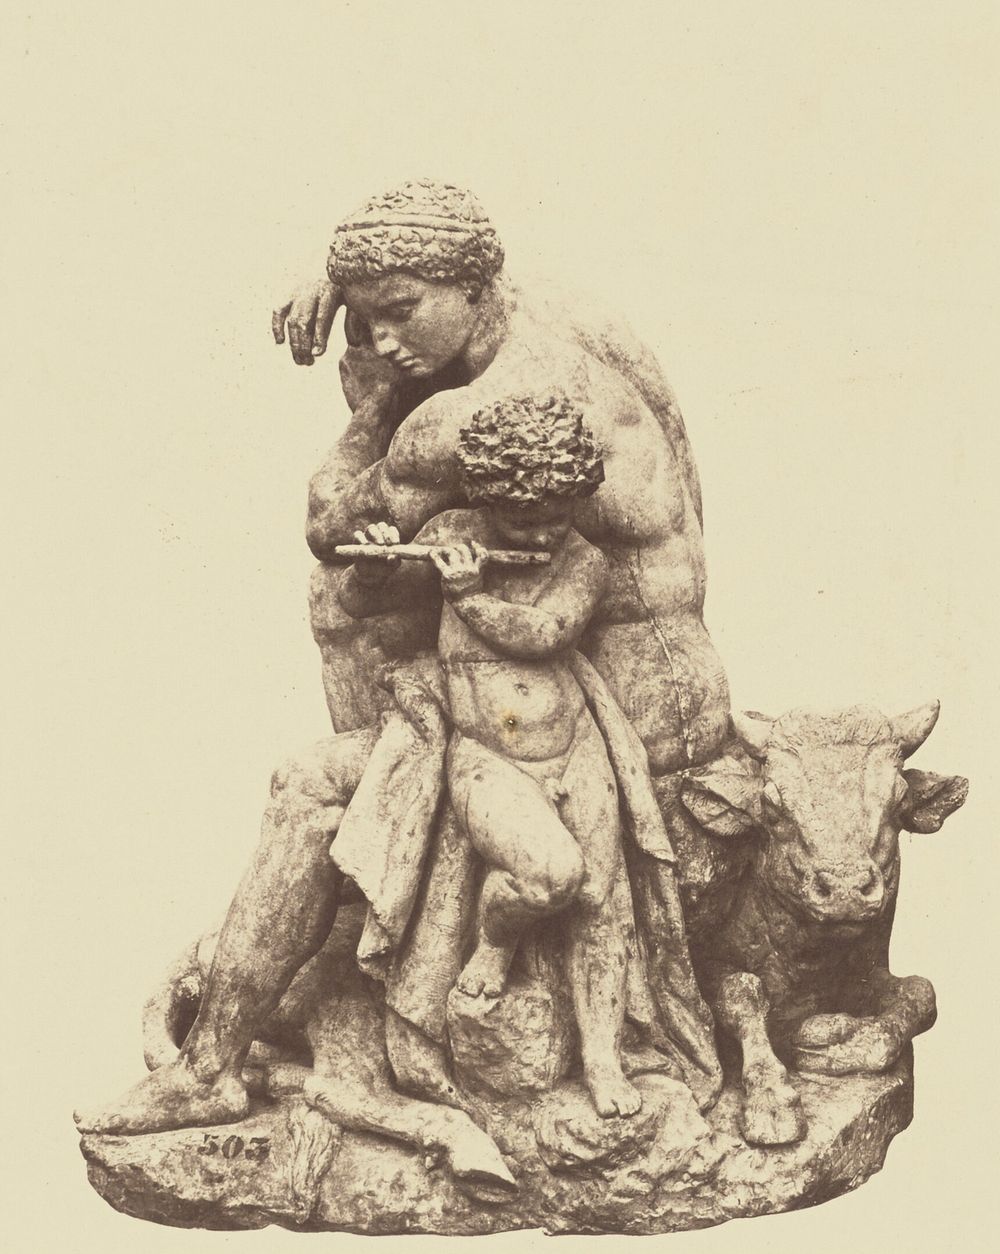 "La Paix", Sculpture by Antoine-Louis Barye, Decoration of the Louvre, Paris by Édouard Baldus